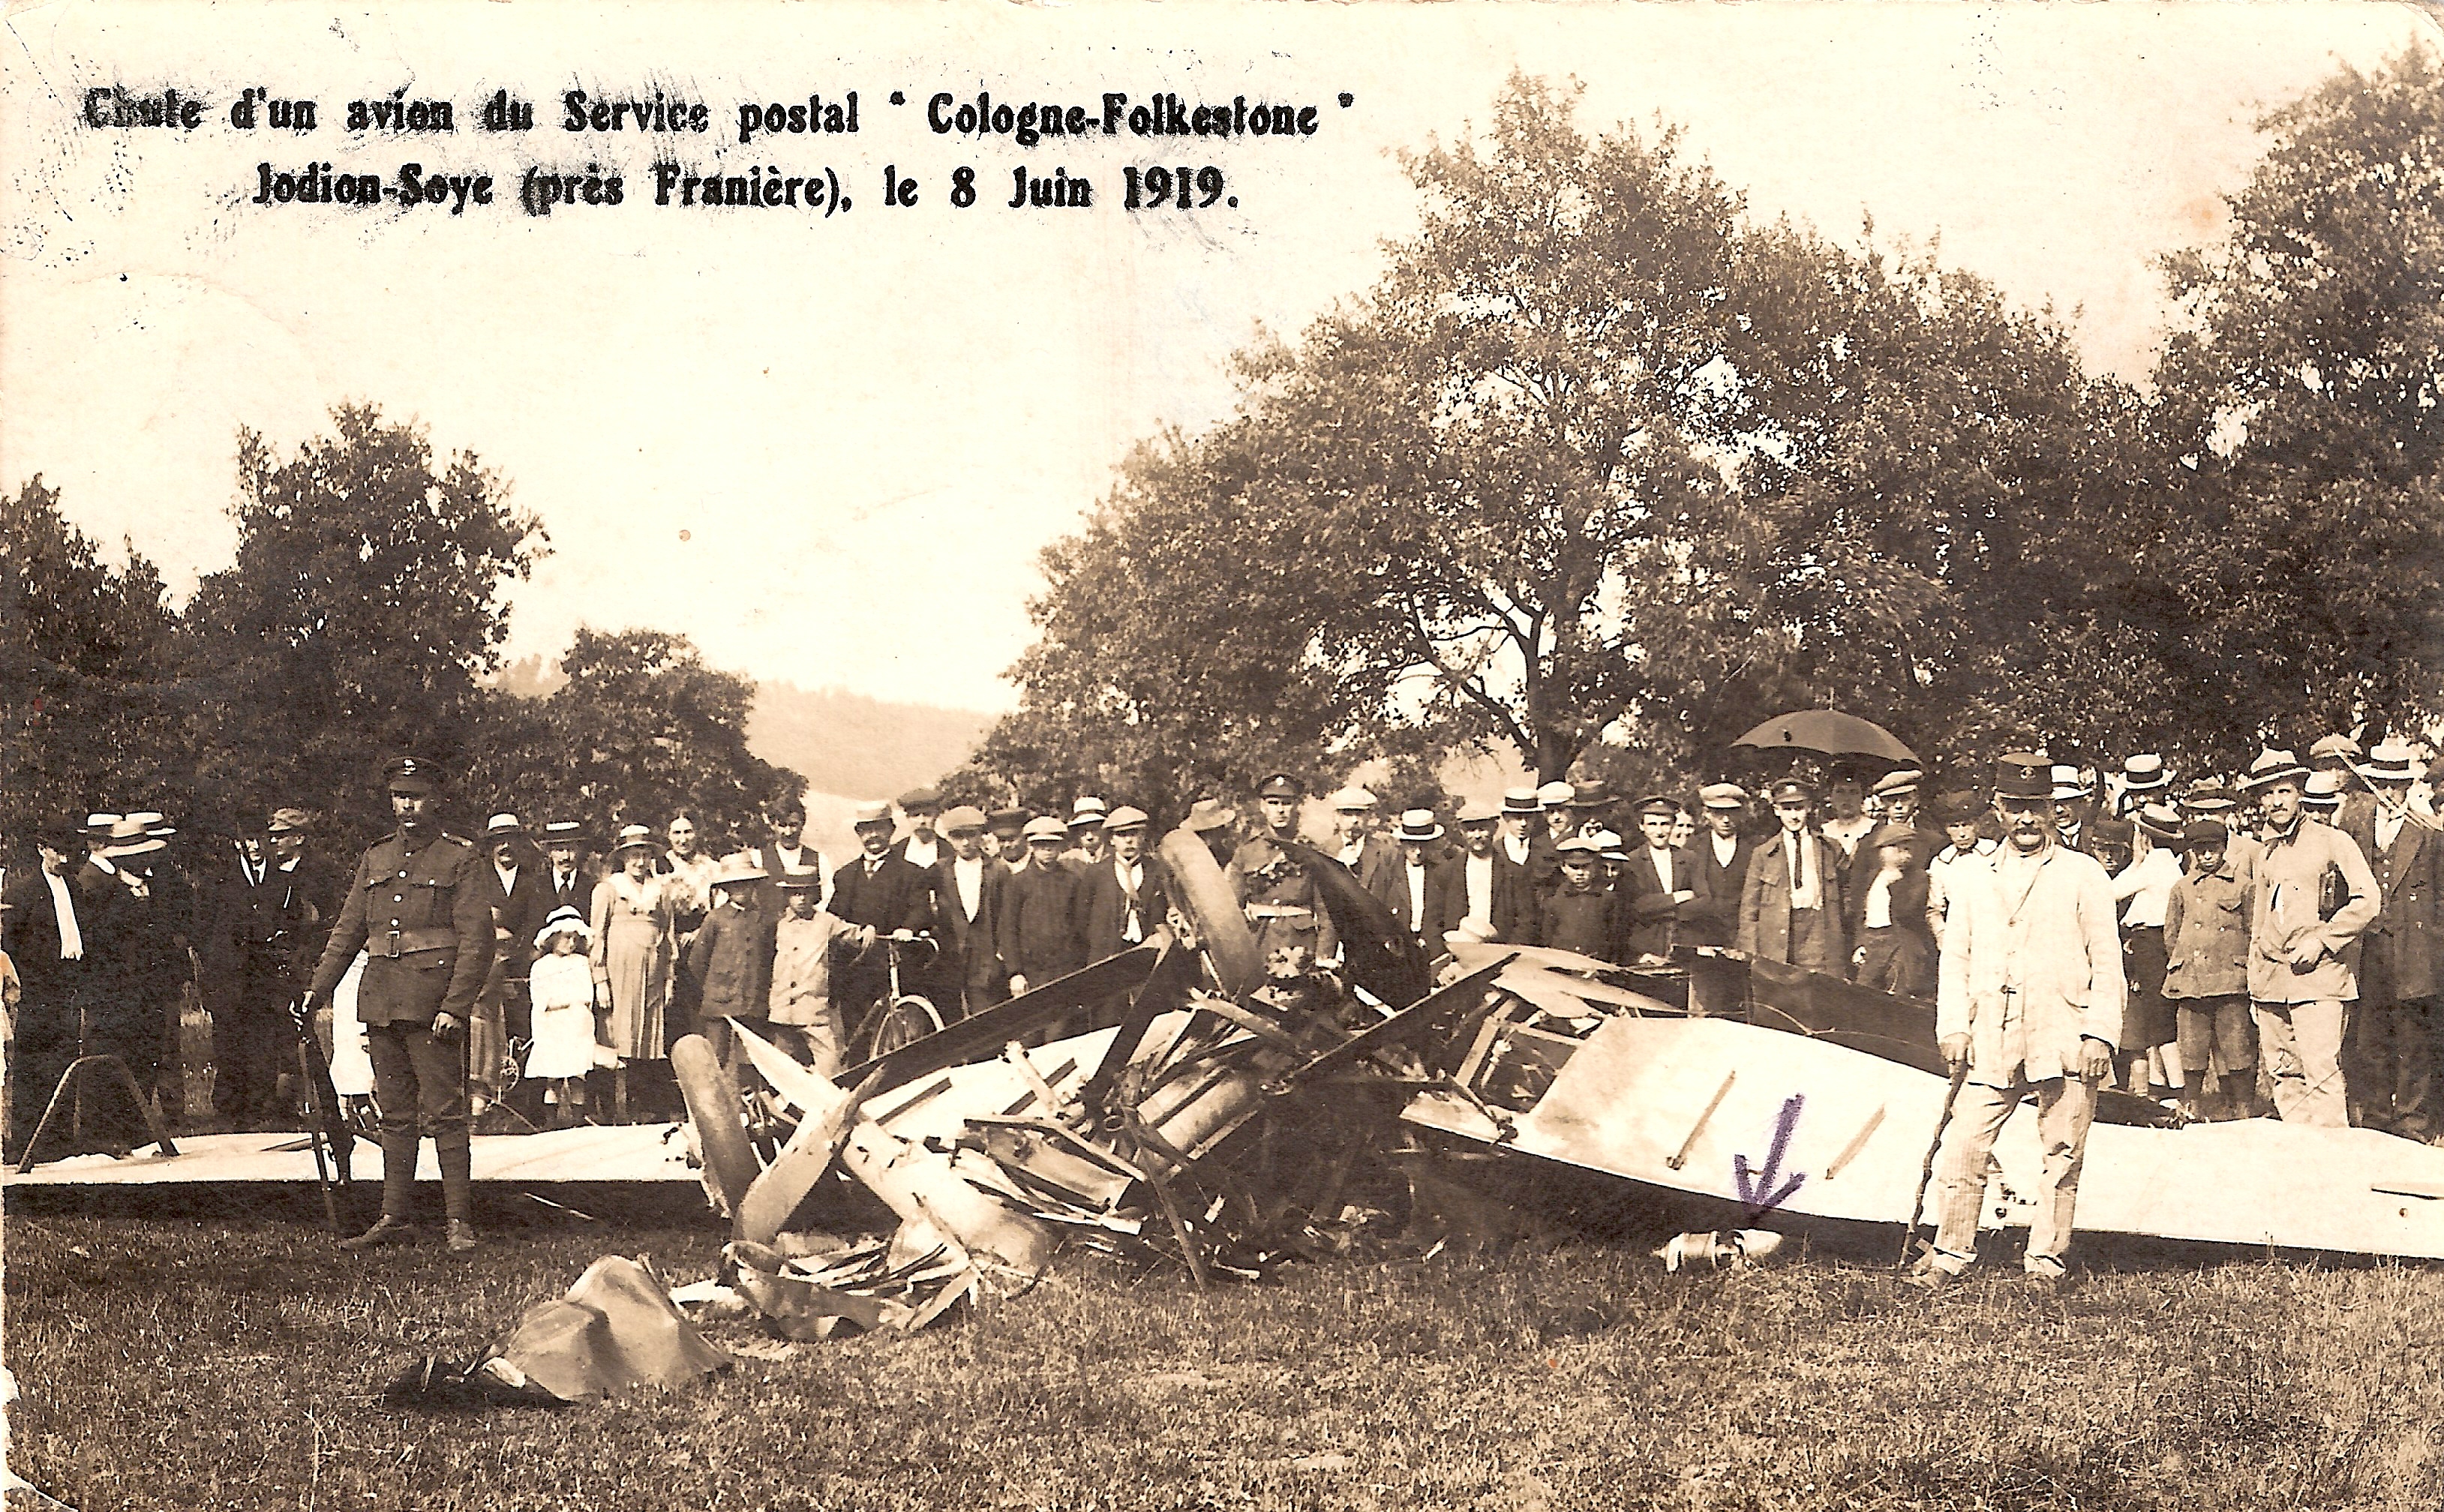 Belgique, Soye (Jodion) près de Franière (Floreffe) - Chute d'un avion du service postal  Cologne - Folkestone  le 8 juin 1919